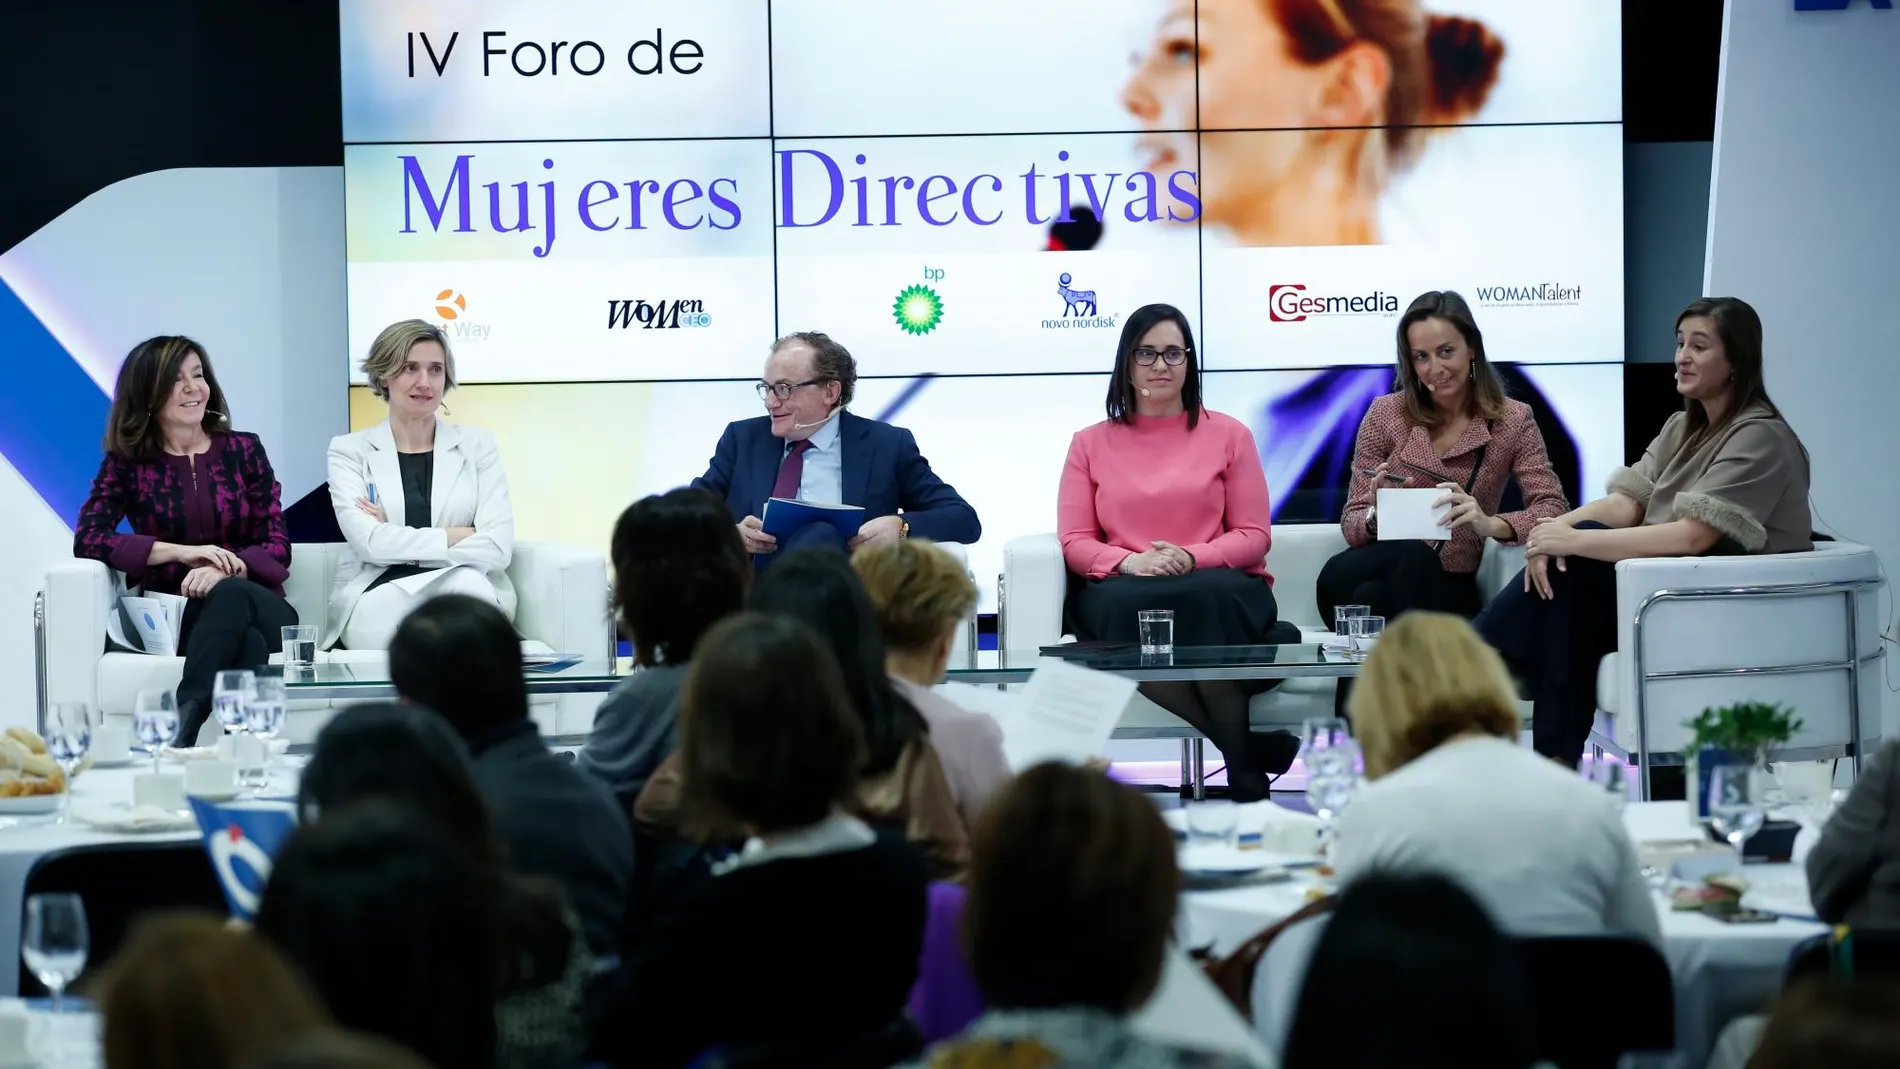 Foro de Mujeres Directivas organizado por LA RAZÓN